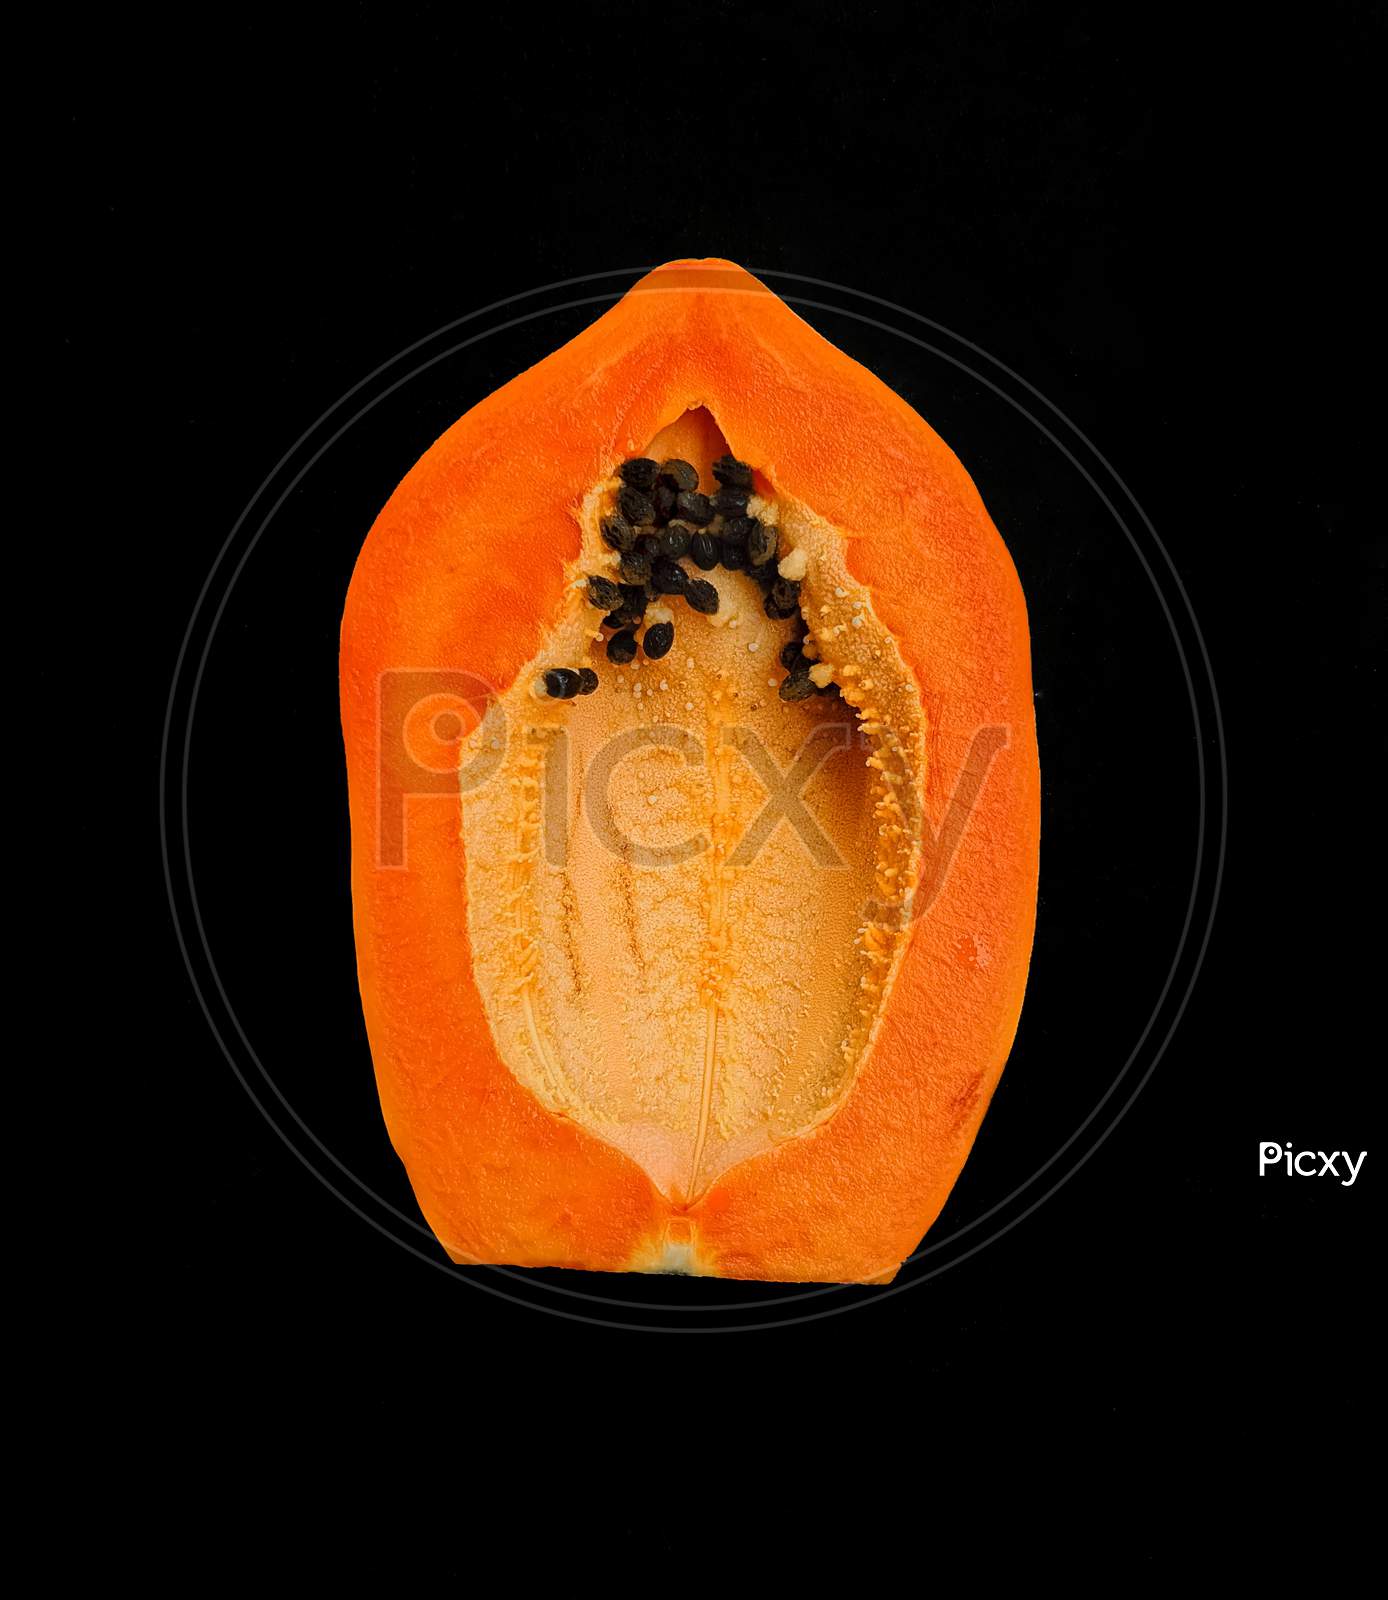 Indian papaya on isolated background